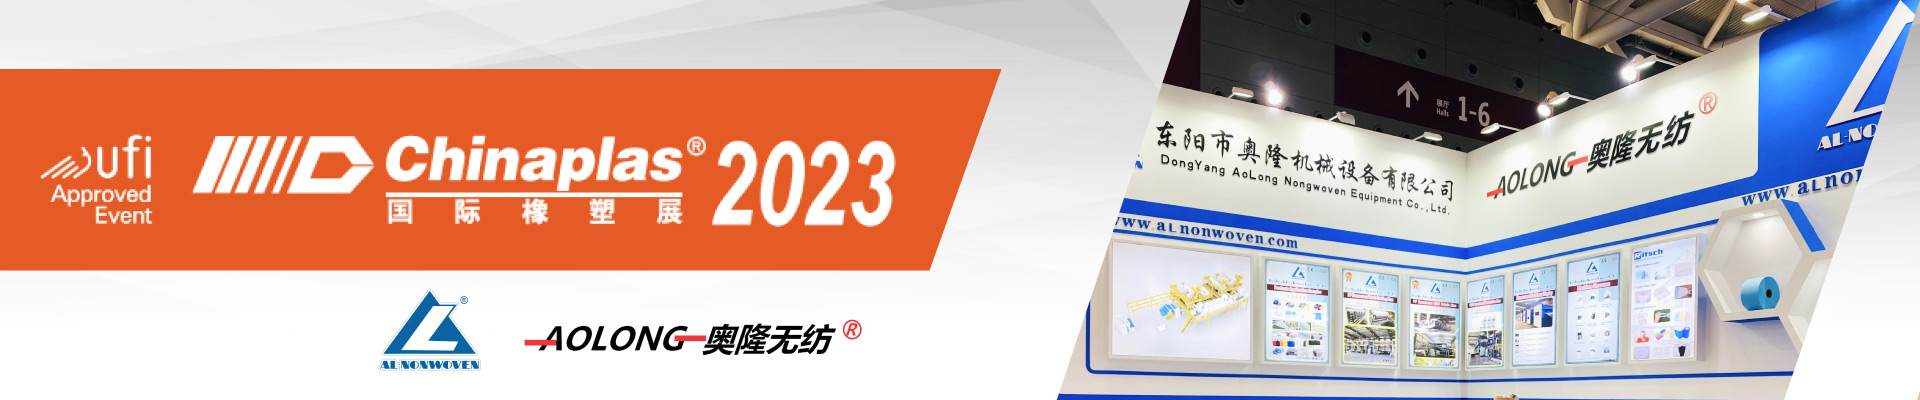 Chinaplas in ShenZhen 2023/4/17--20